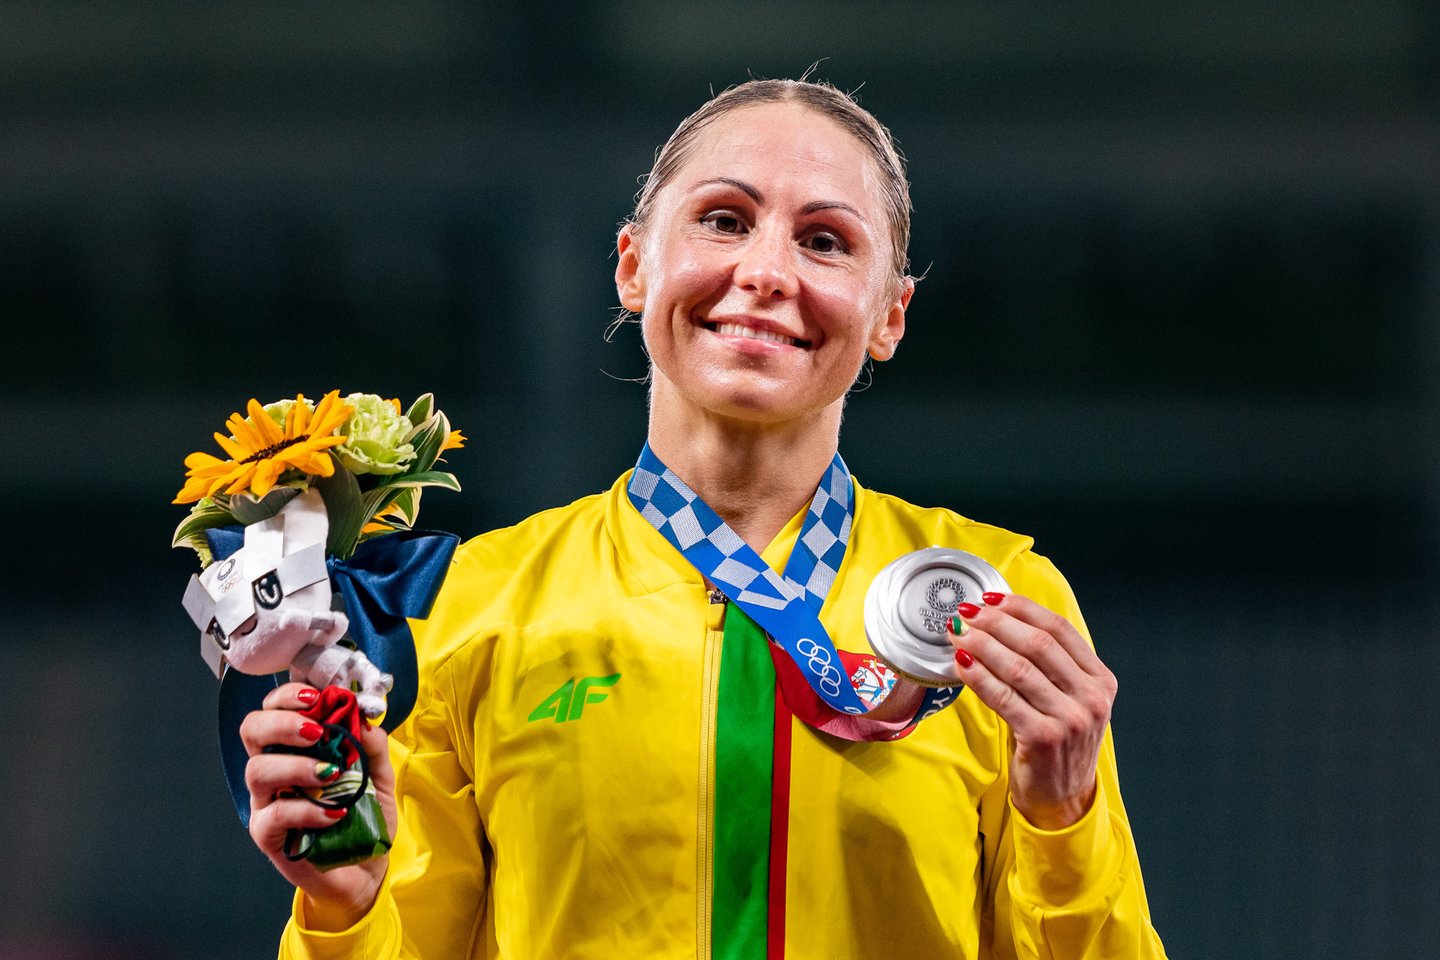 L.Asadauskaitė-Zadneprovskienė tapo olimpine vicečempione.<br>V.Dranginio/LTOK nuotr.